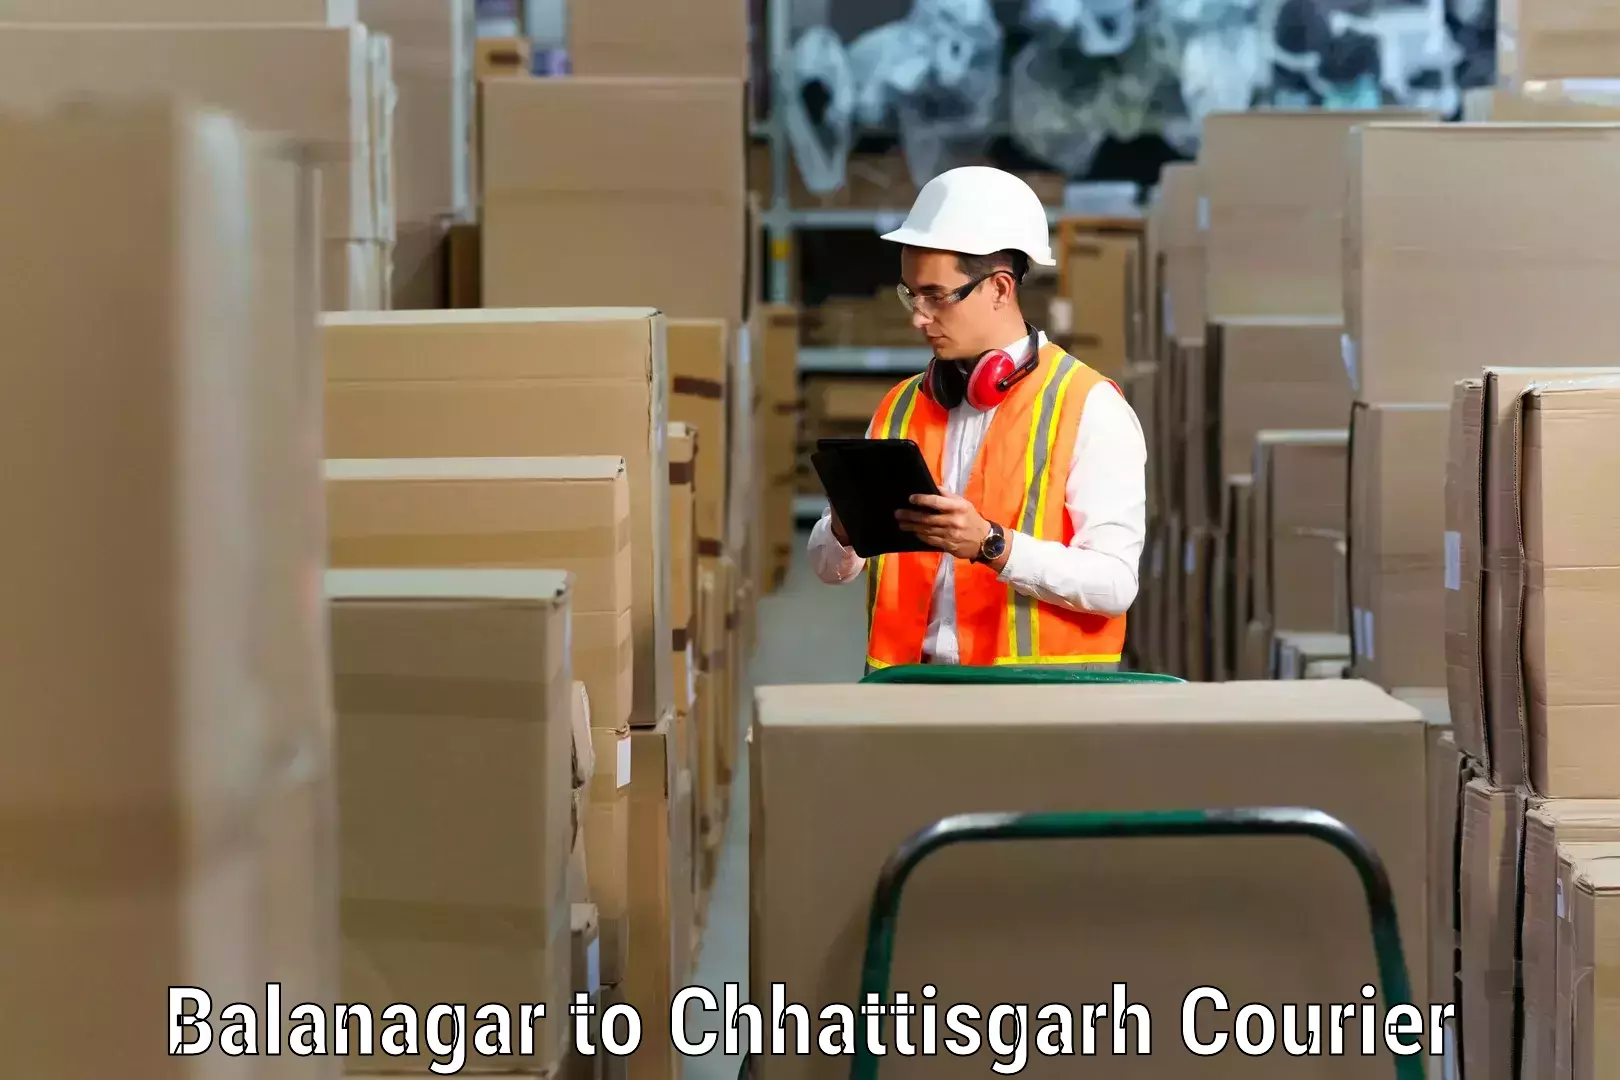 Moving and handling services Balanagar to Pandariya